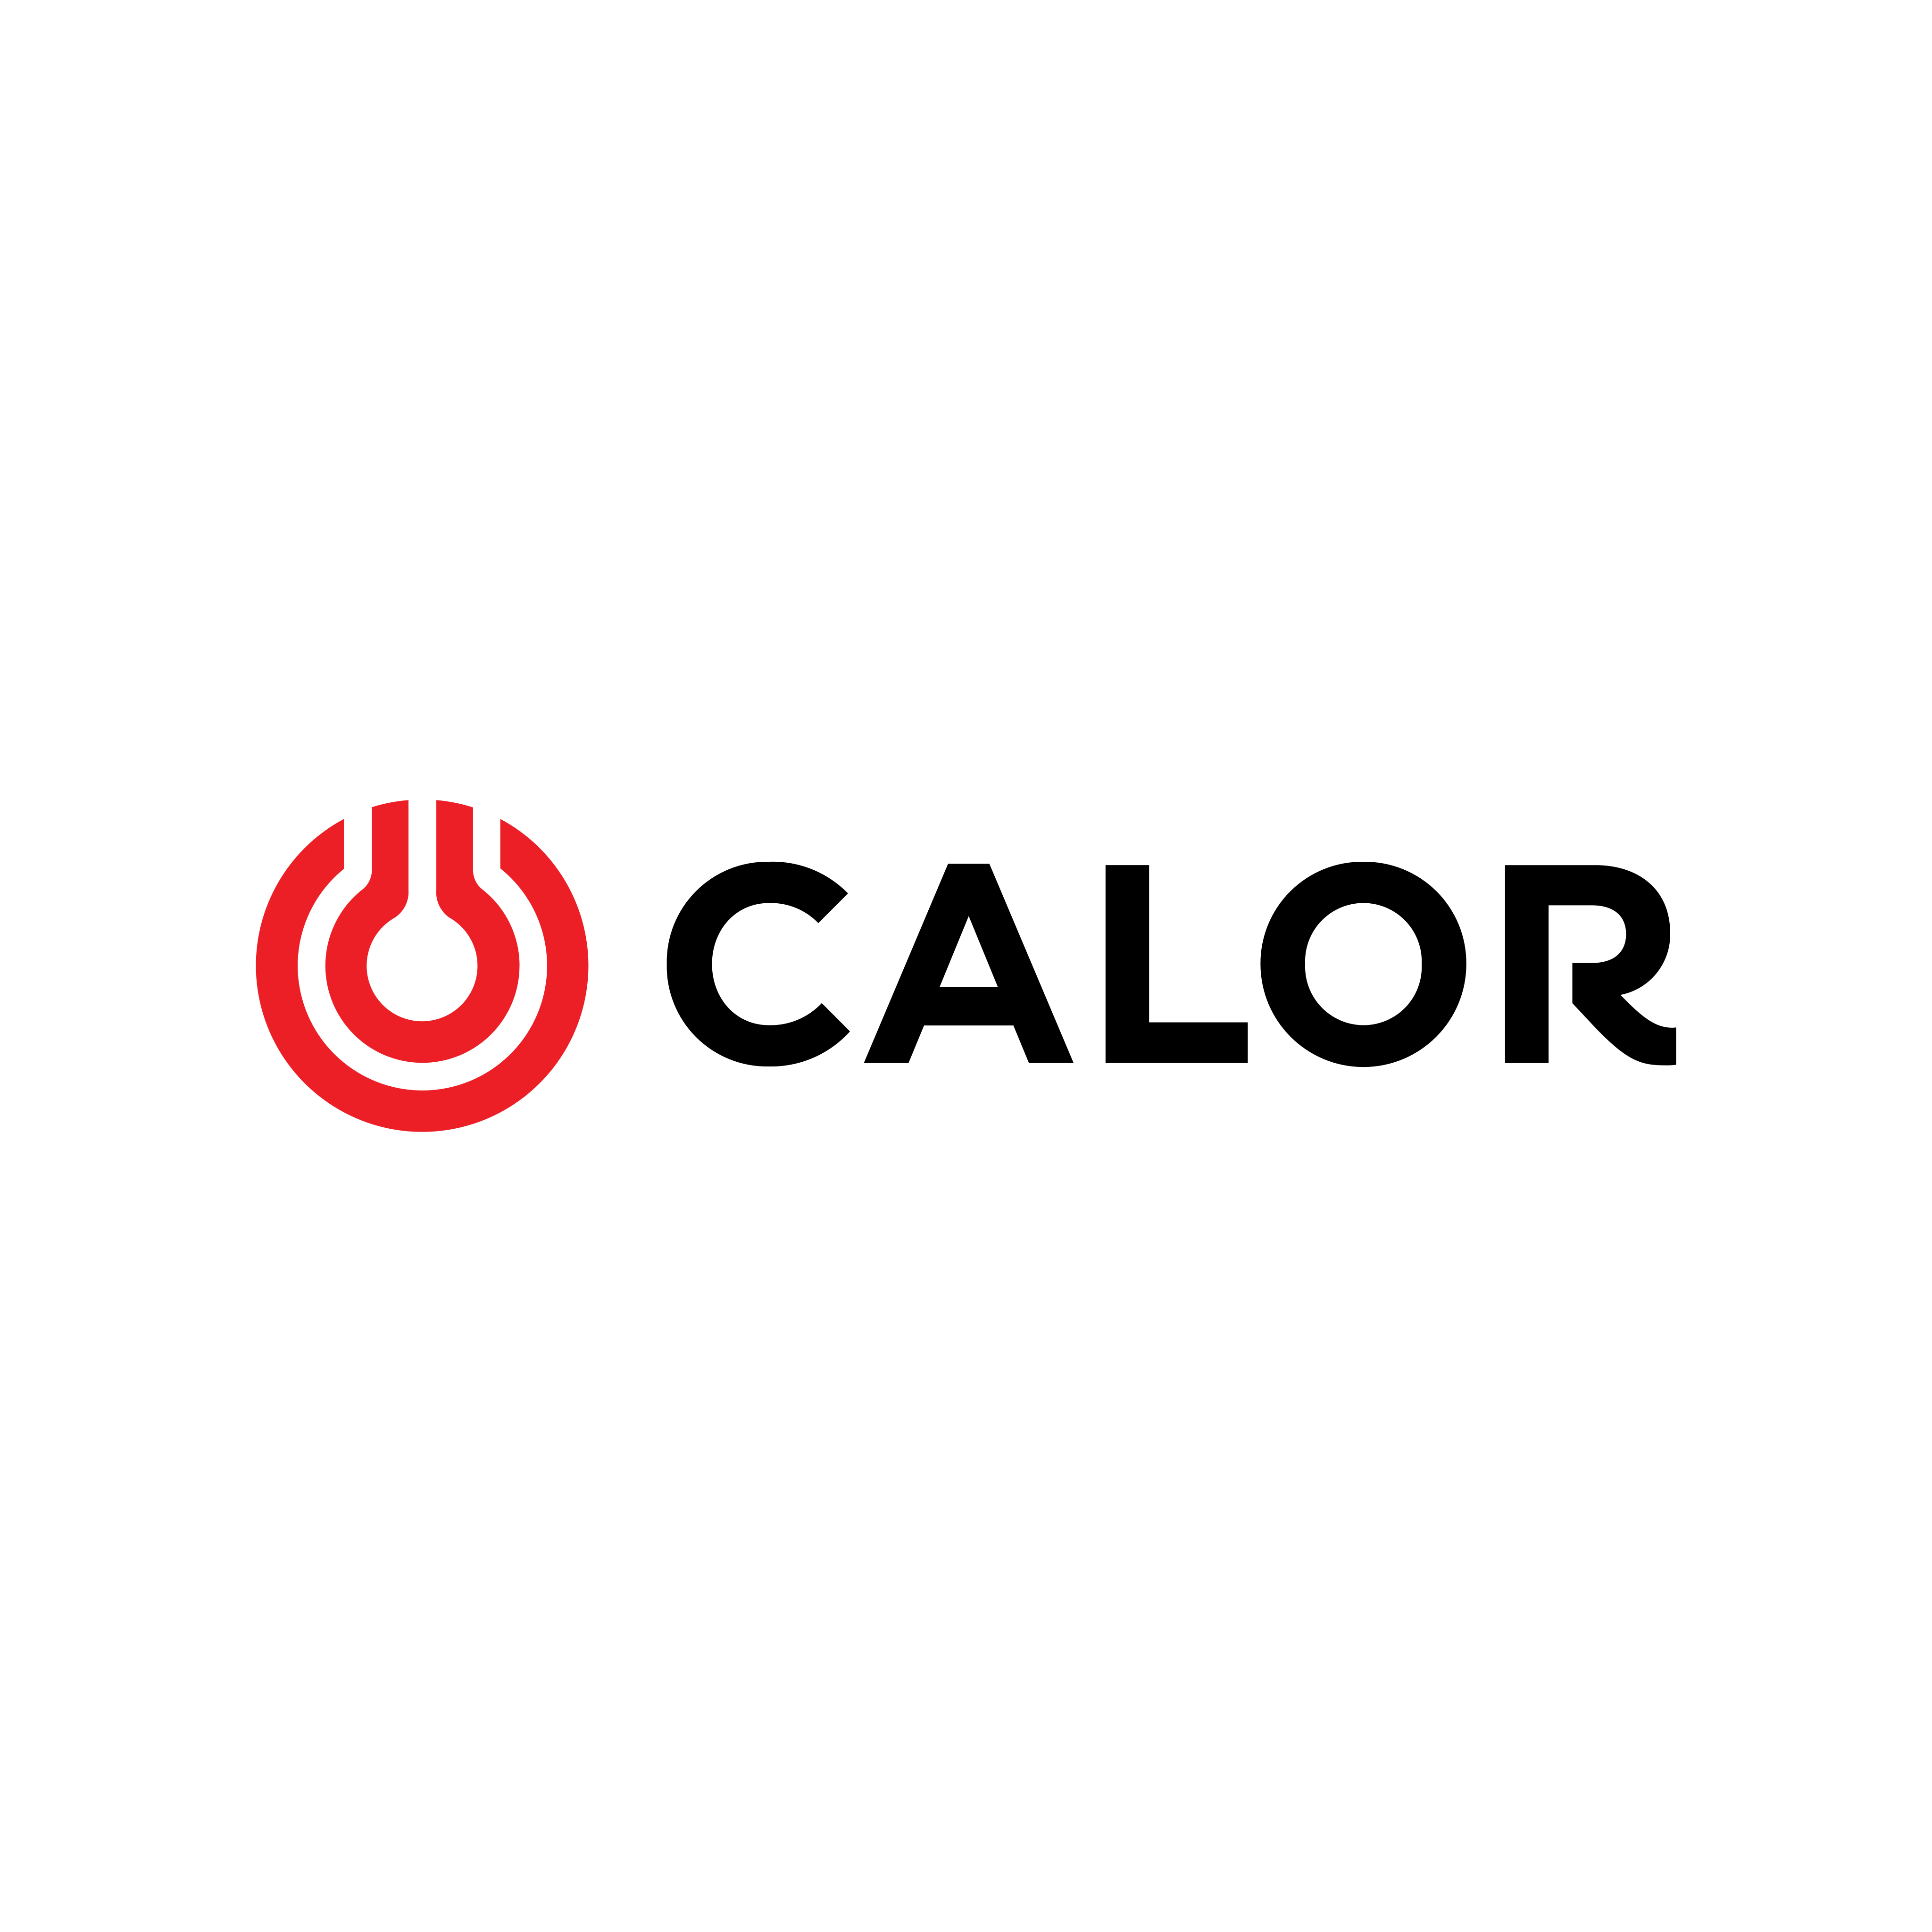 calor logo 0 - Calor Gas Logo